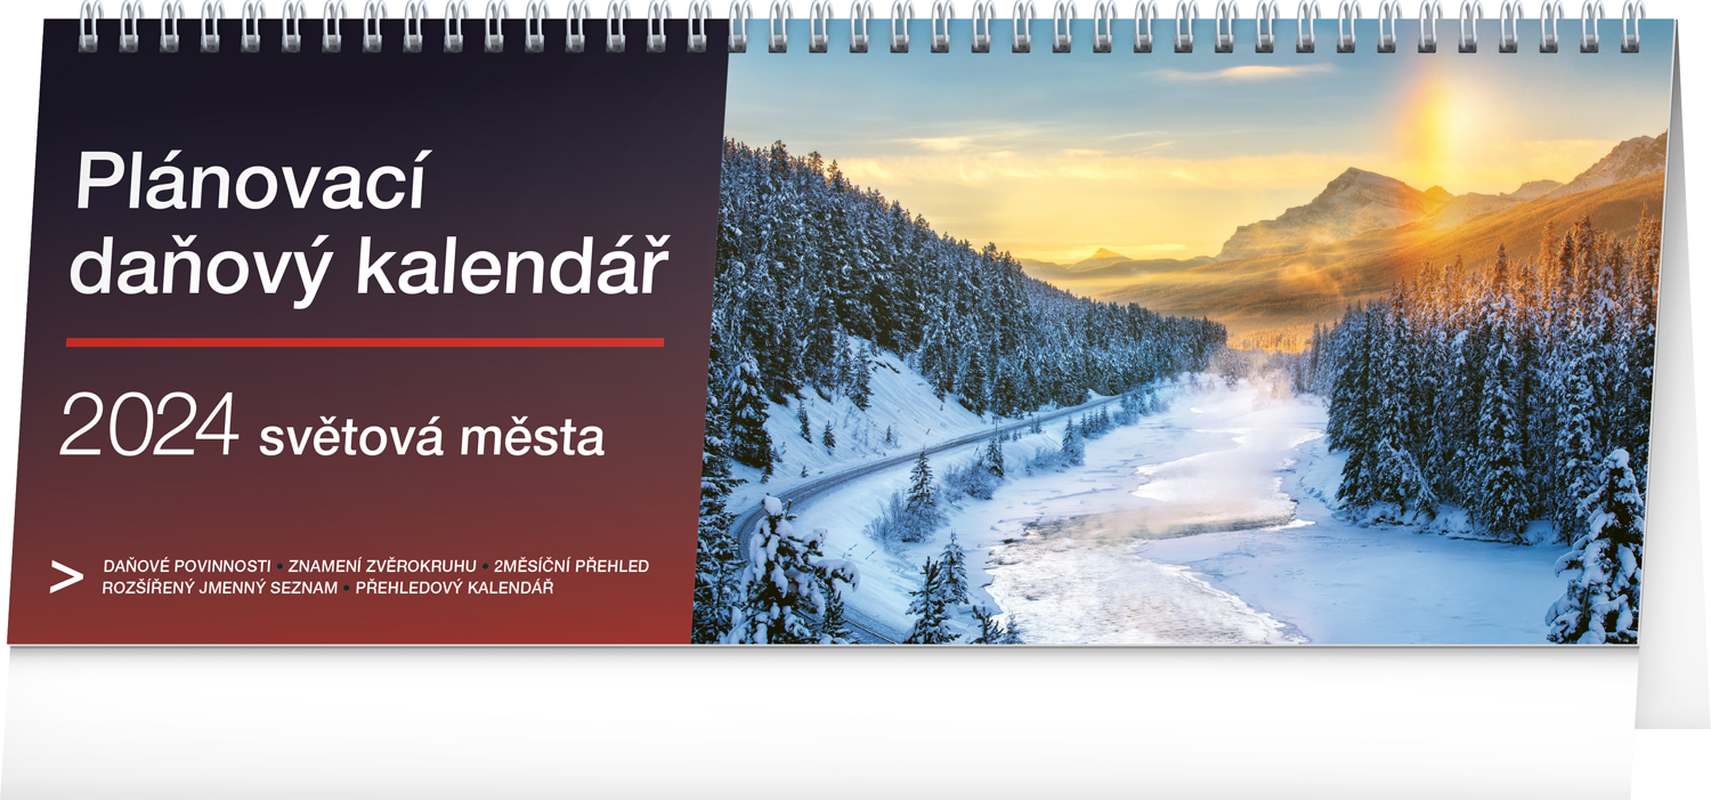 Stolní kalendář Plánovací daňový - Světová města 2024, 33 x 12,5 cm